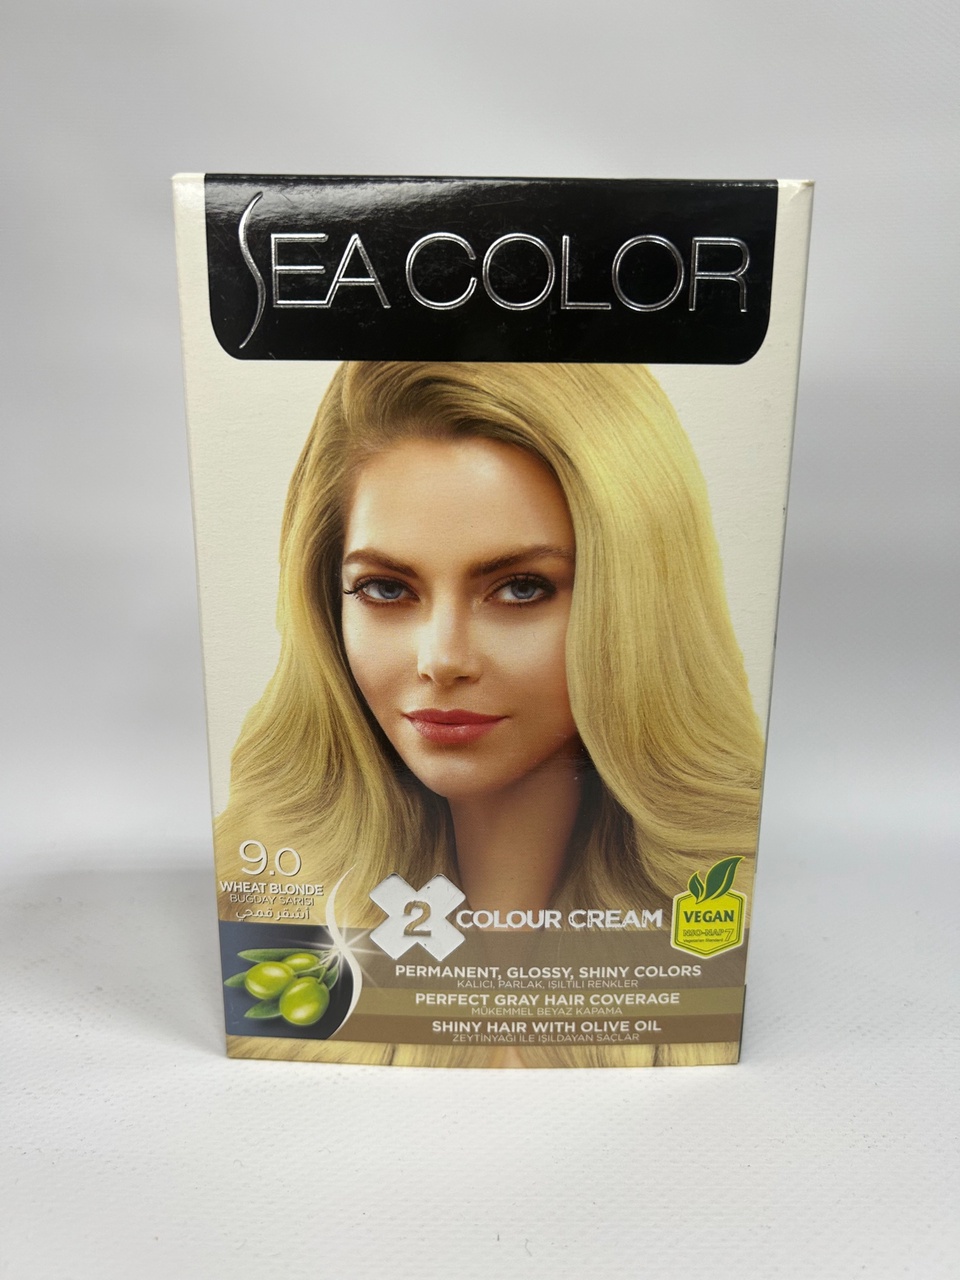 Sea Color 9.0 Краска д/волос «Натуральный блондин» - 300 ₽, заказать онлайн.